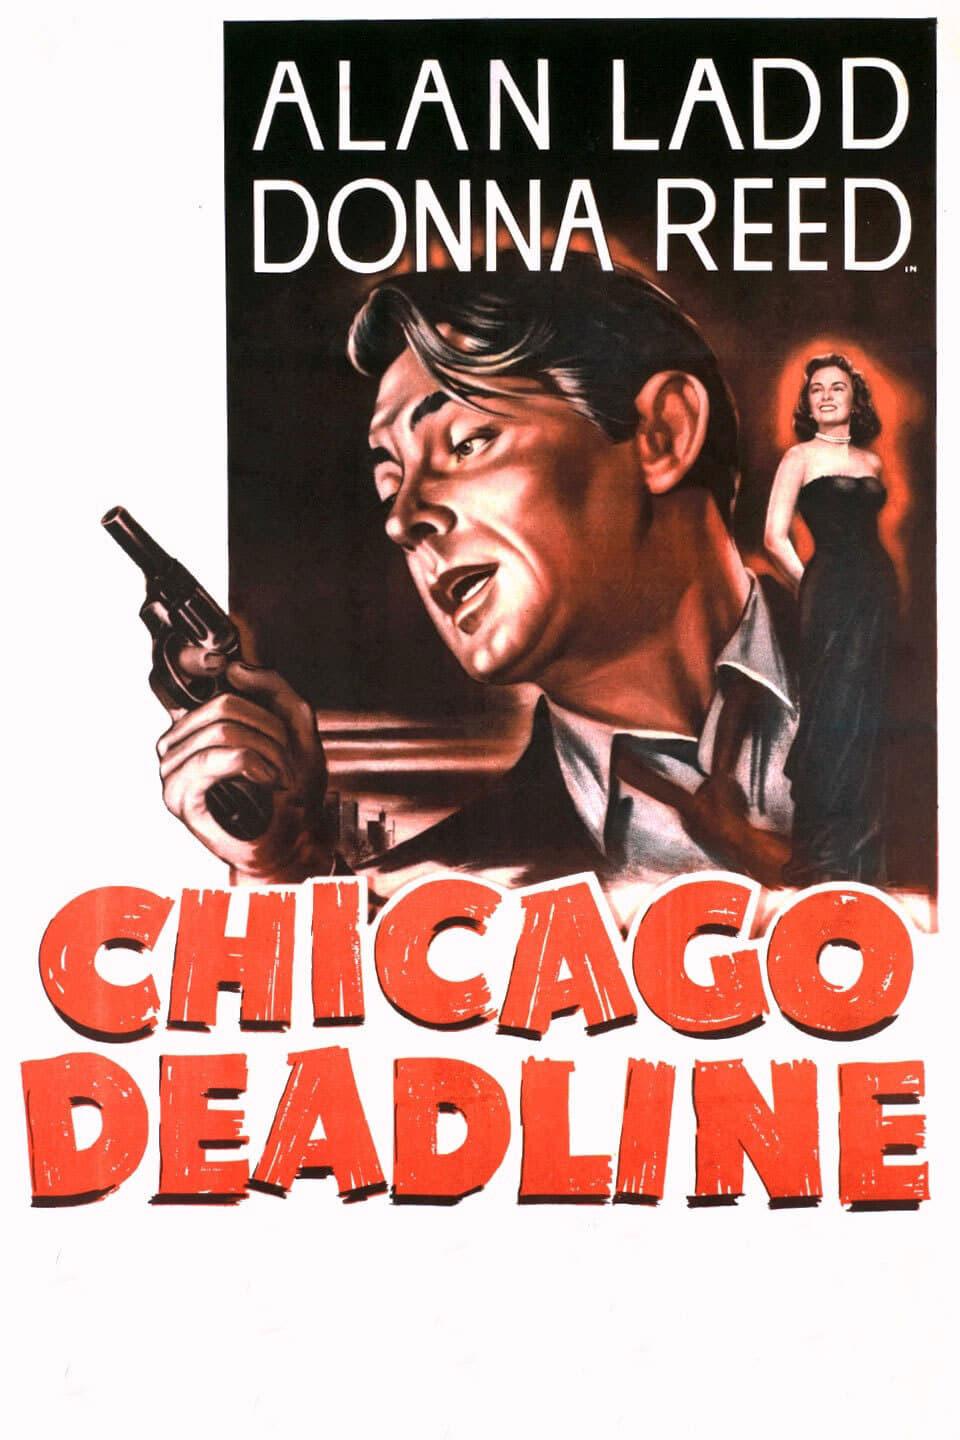 Chicago Deadline poster